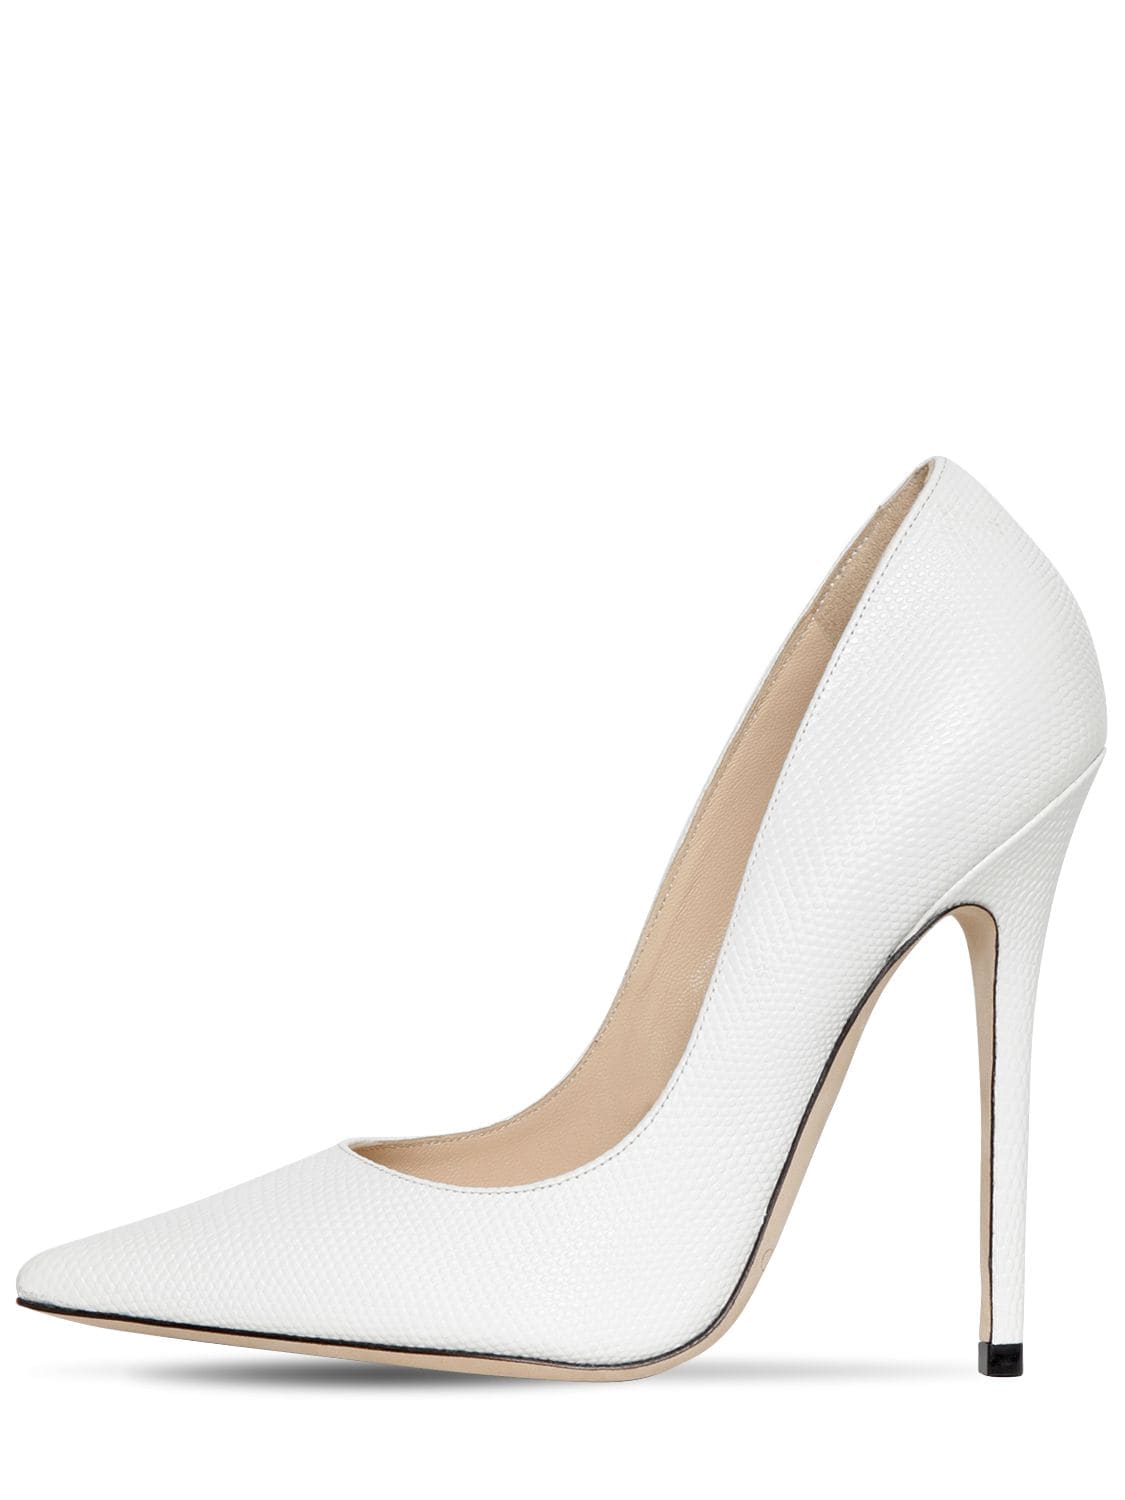 jimmy choo heels white